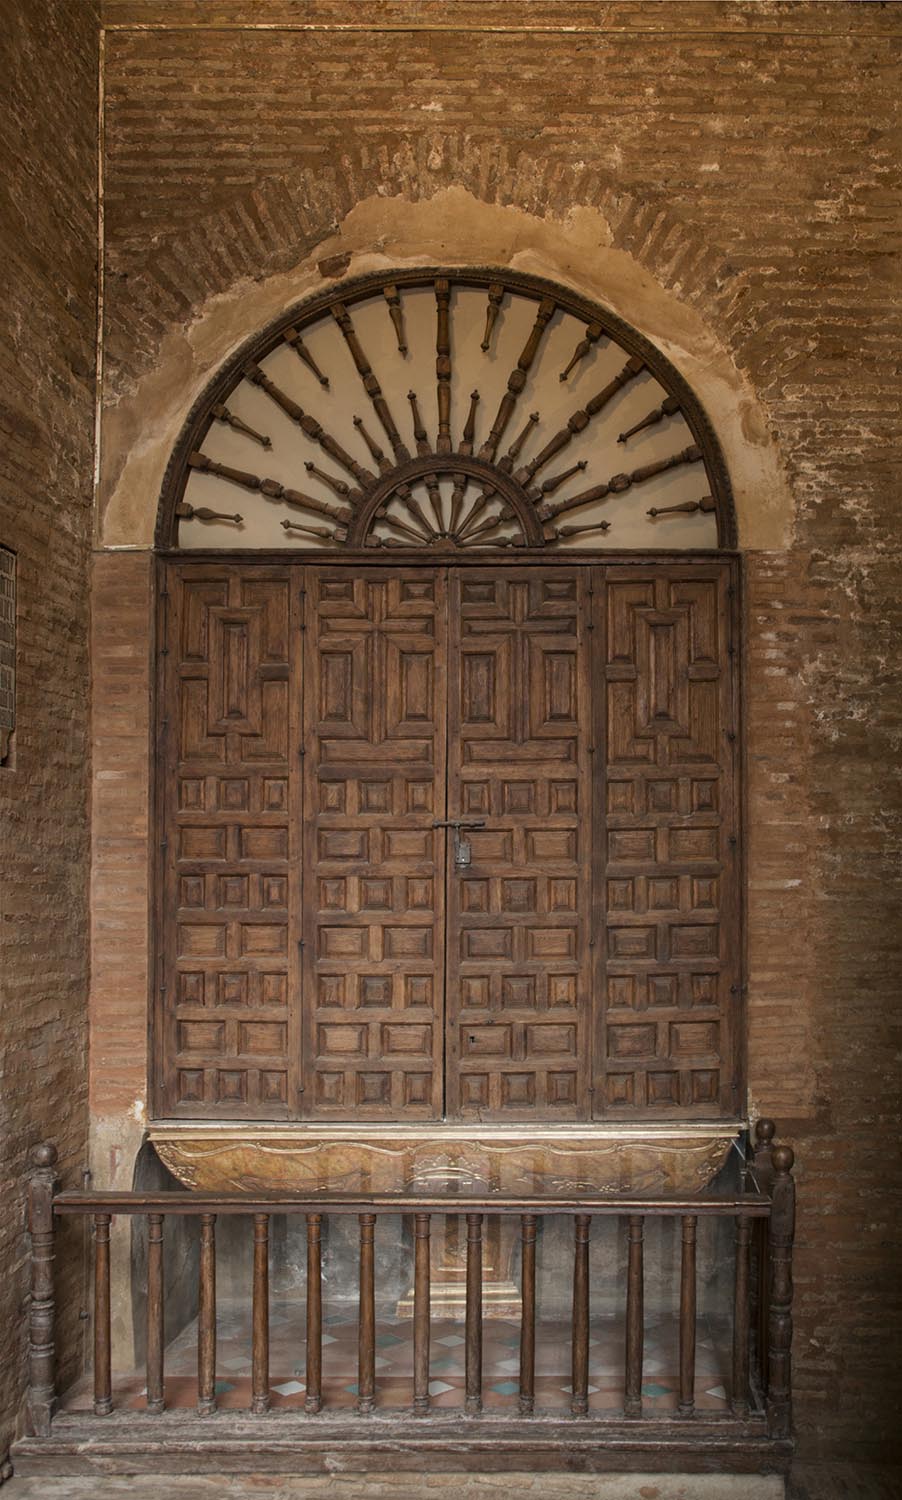 Door of interior passage towards the east